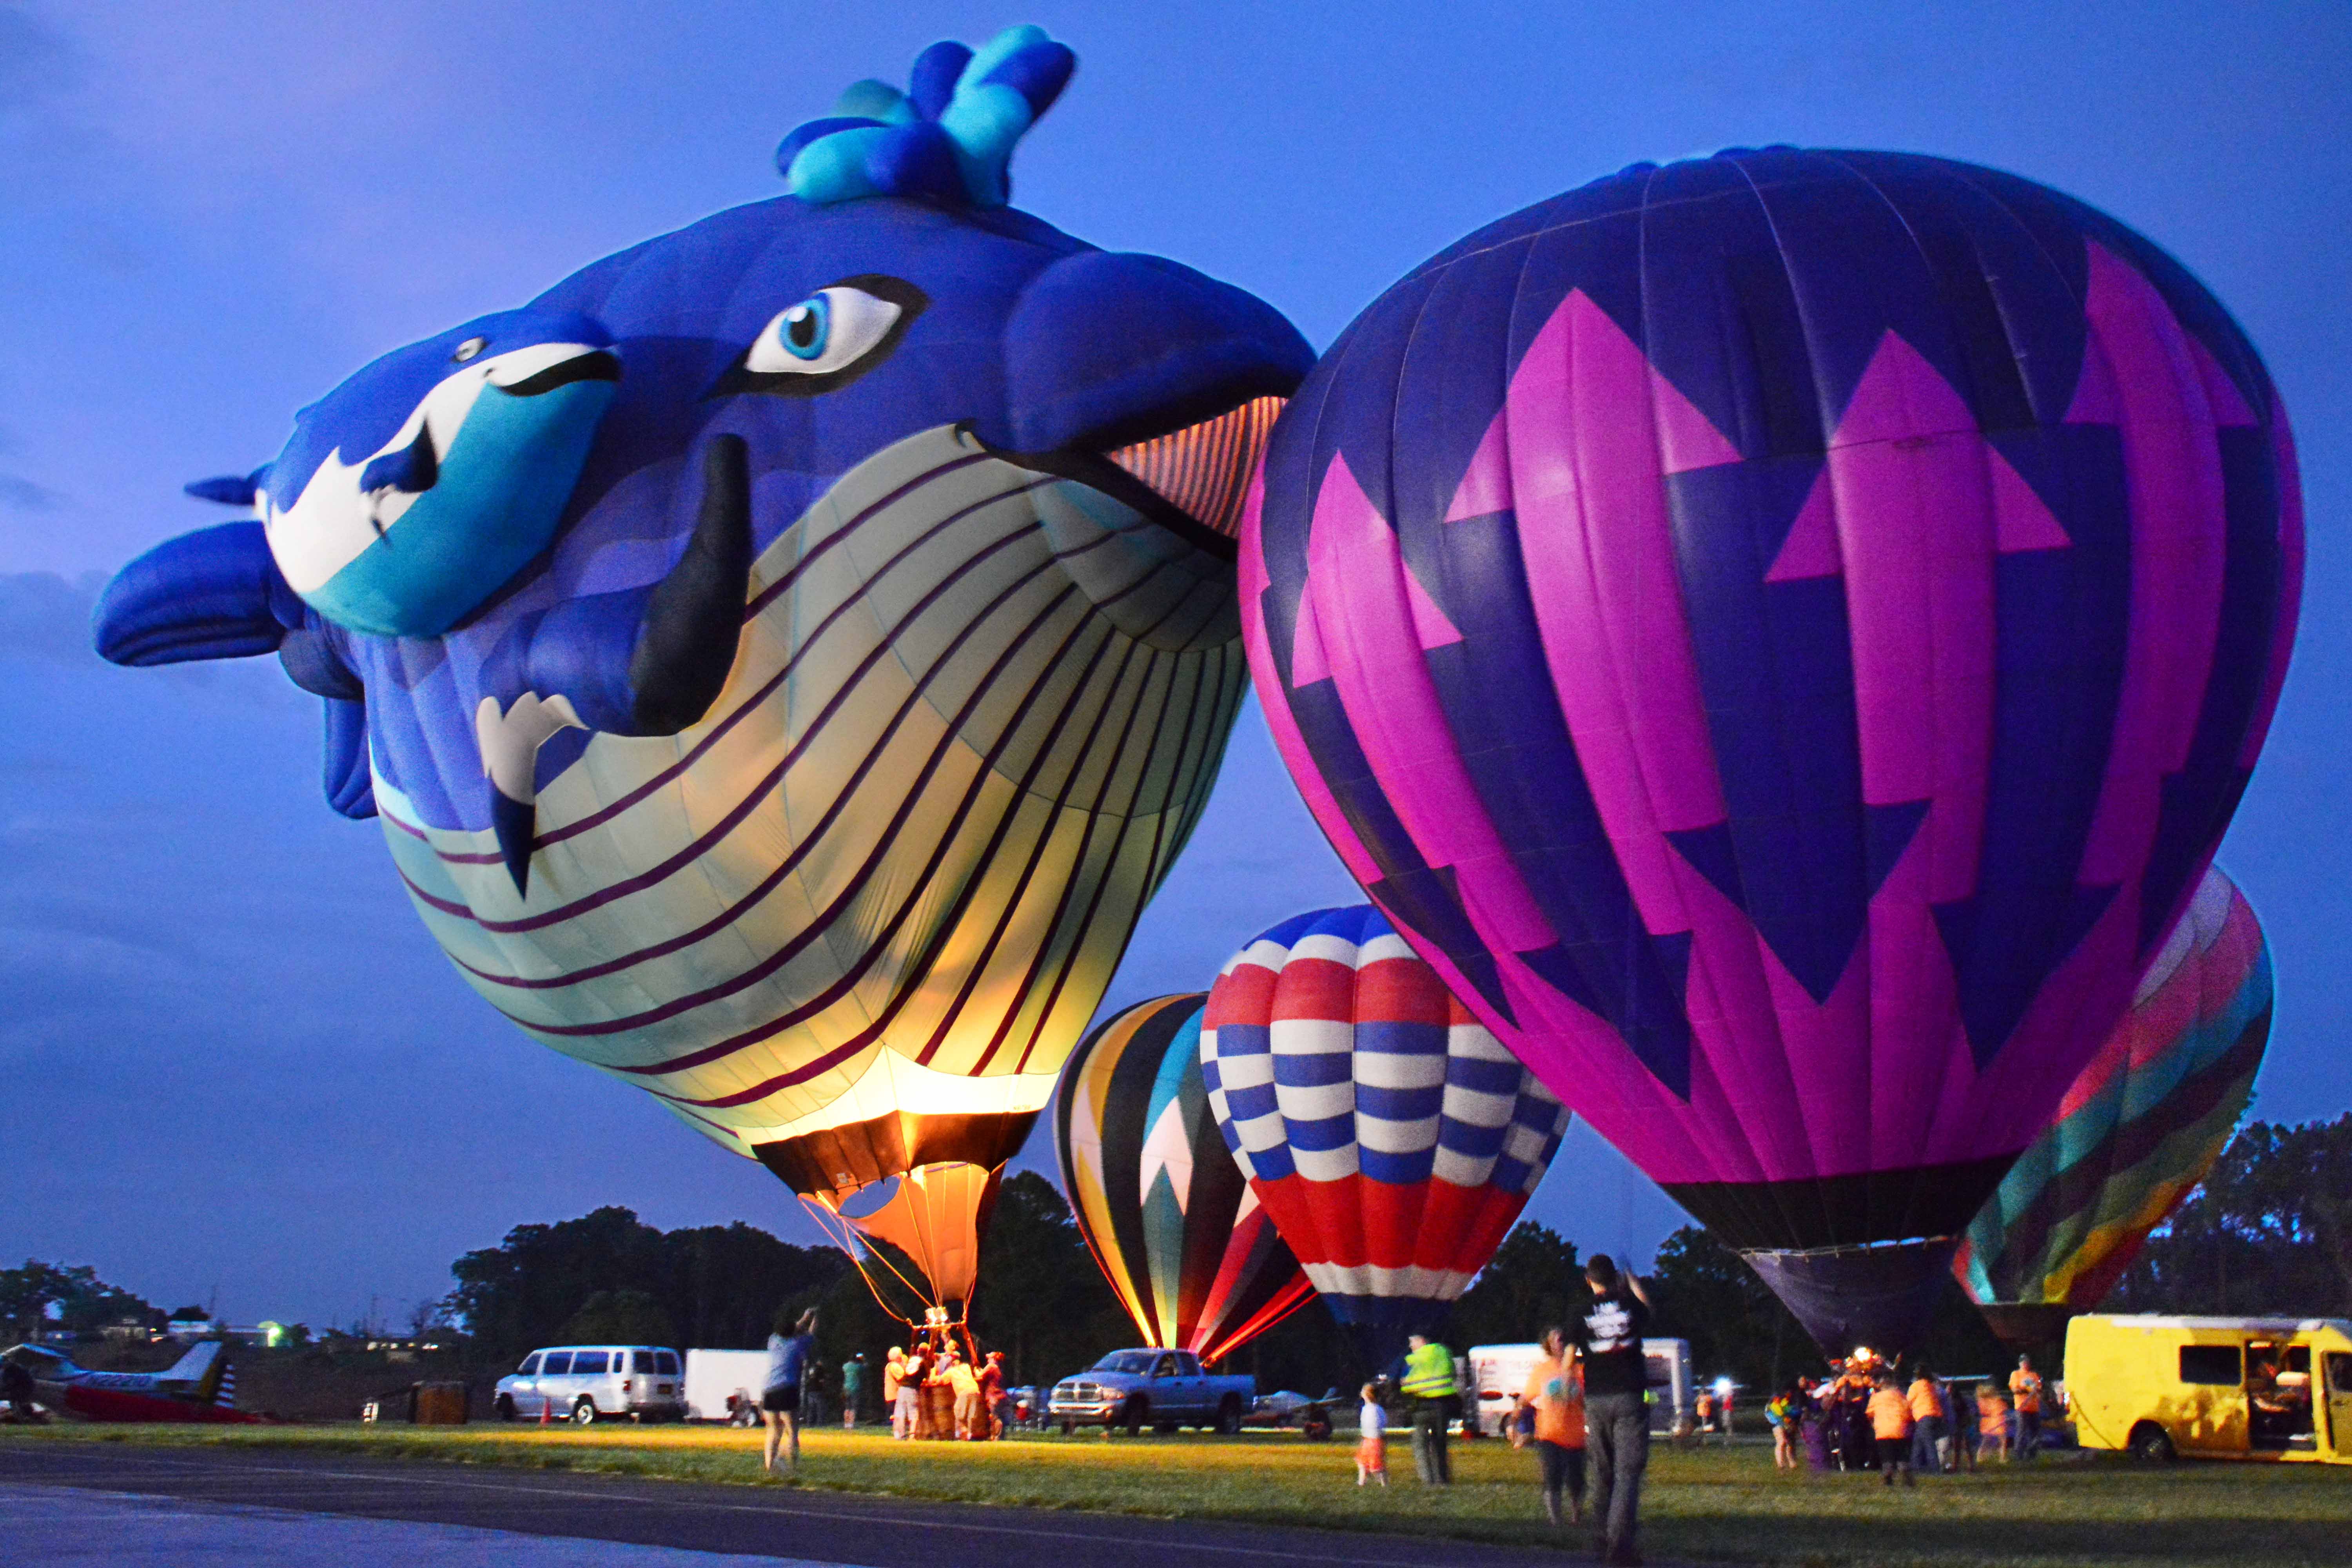 Chester County Balloon Festival